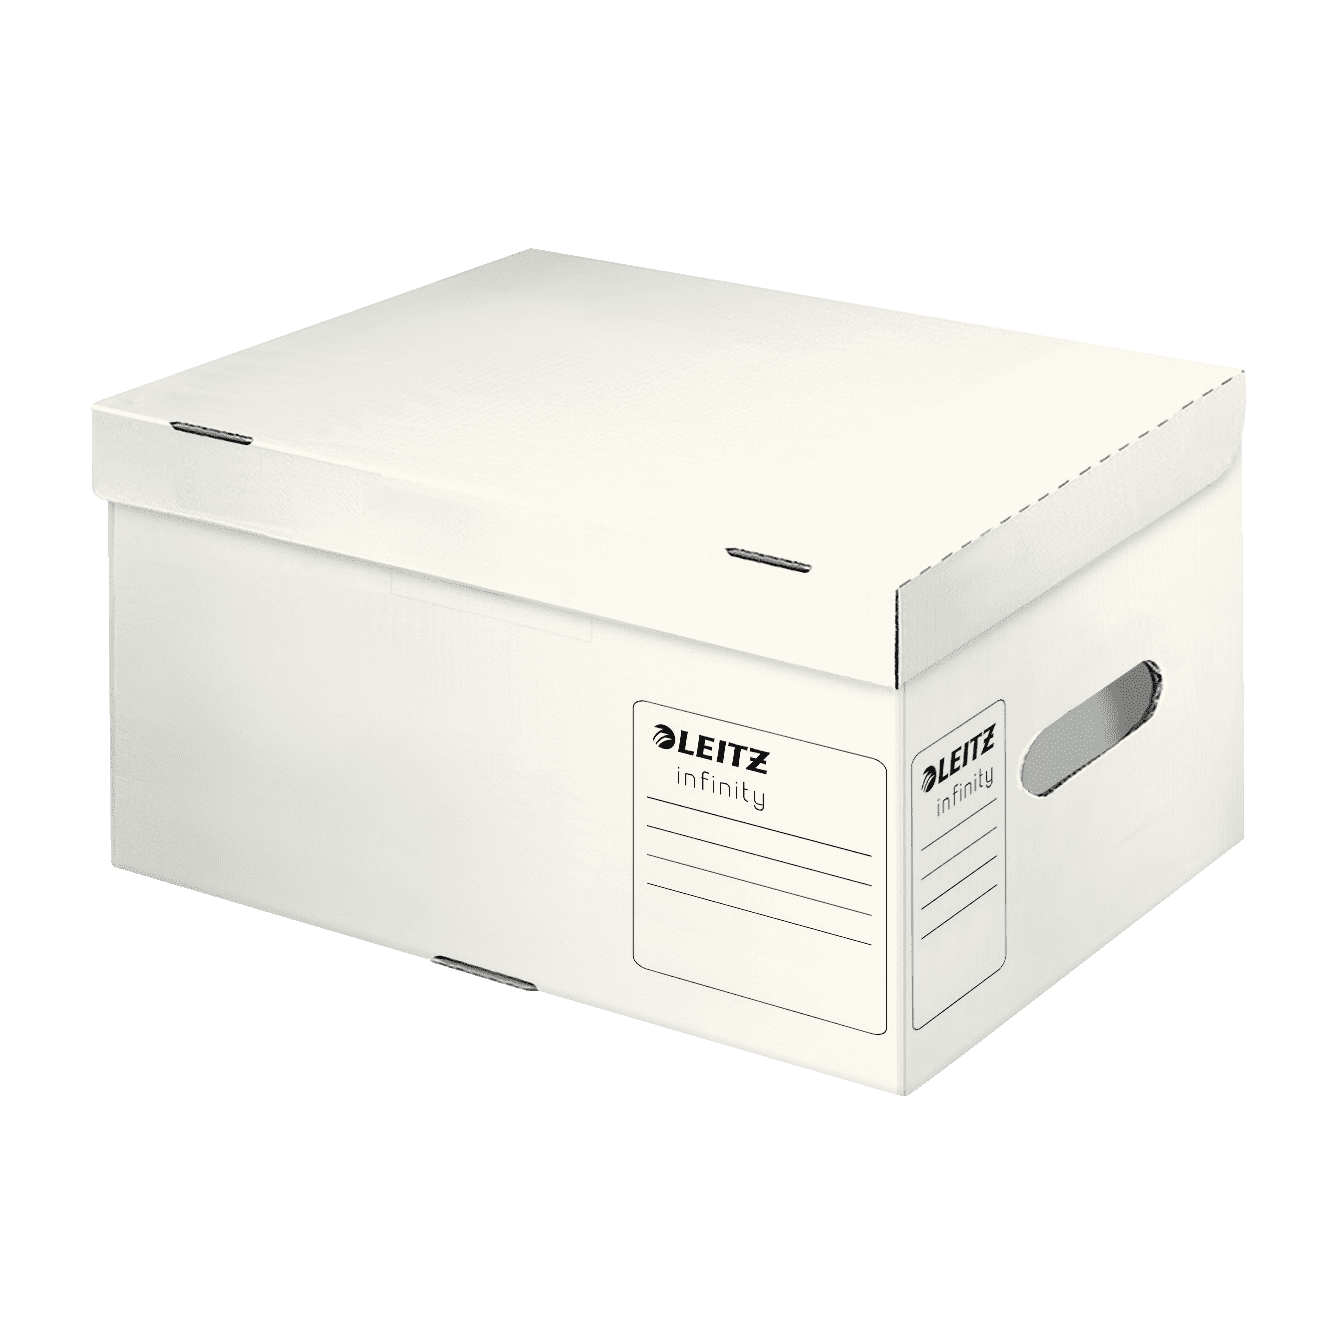 Speciální archivační kontejner s víkem Leitz Infinity velikosti A4, bílá